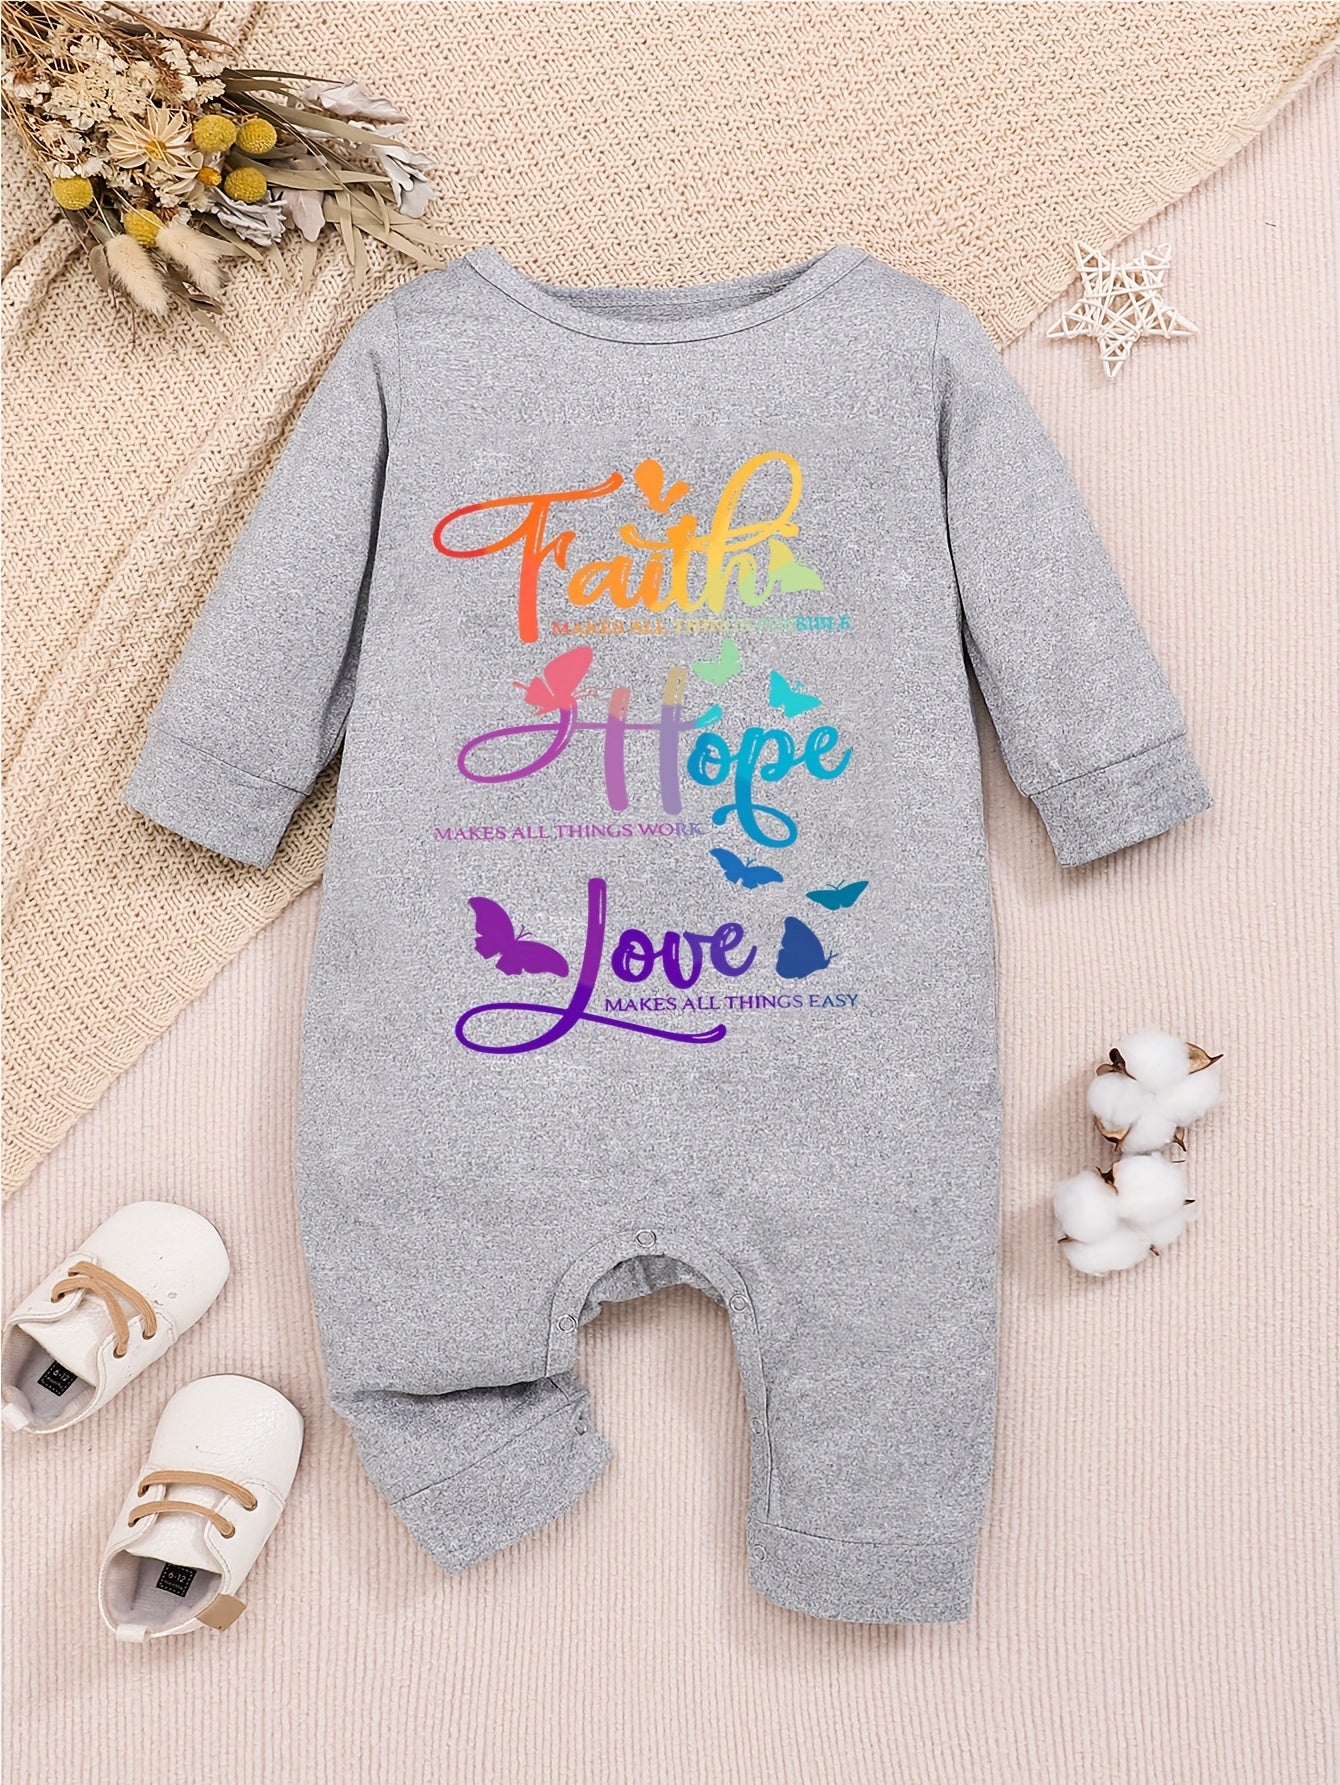 Faith Hope Love Long Sleeve  Christian Baby Onesie claimedbygoddesigns